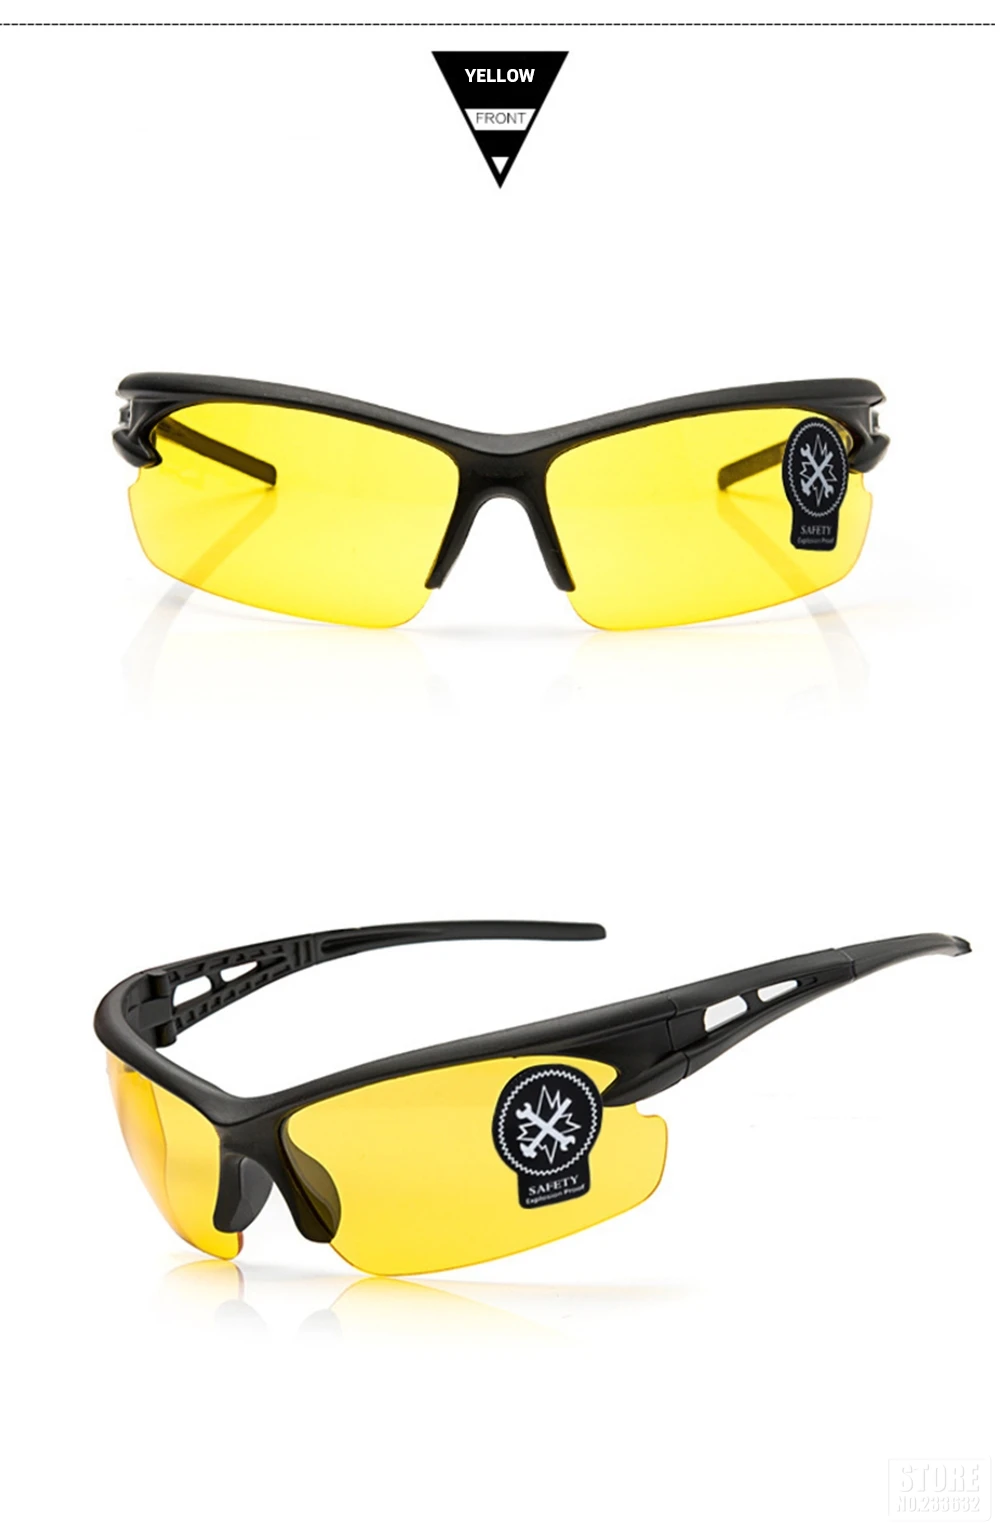 Мотоциклетные очки, мужские очки ночного видения, Мото очки с УФ-защитой, очки для езды на велосипеде, очки для мотокросса, солнцезащитные очки